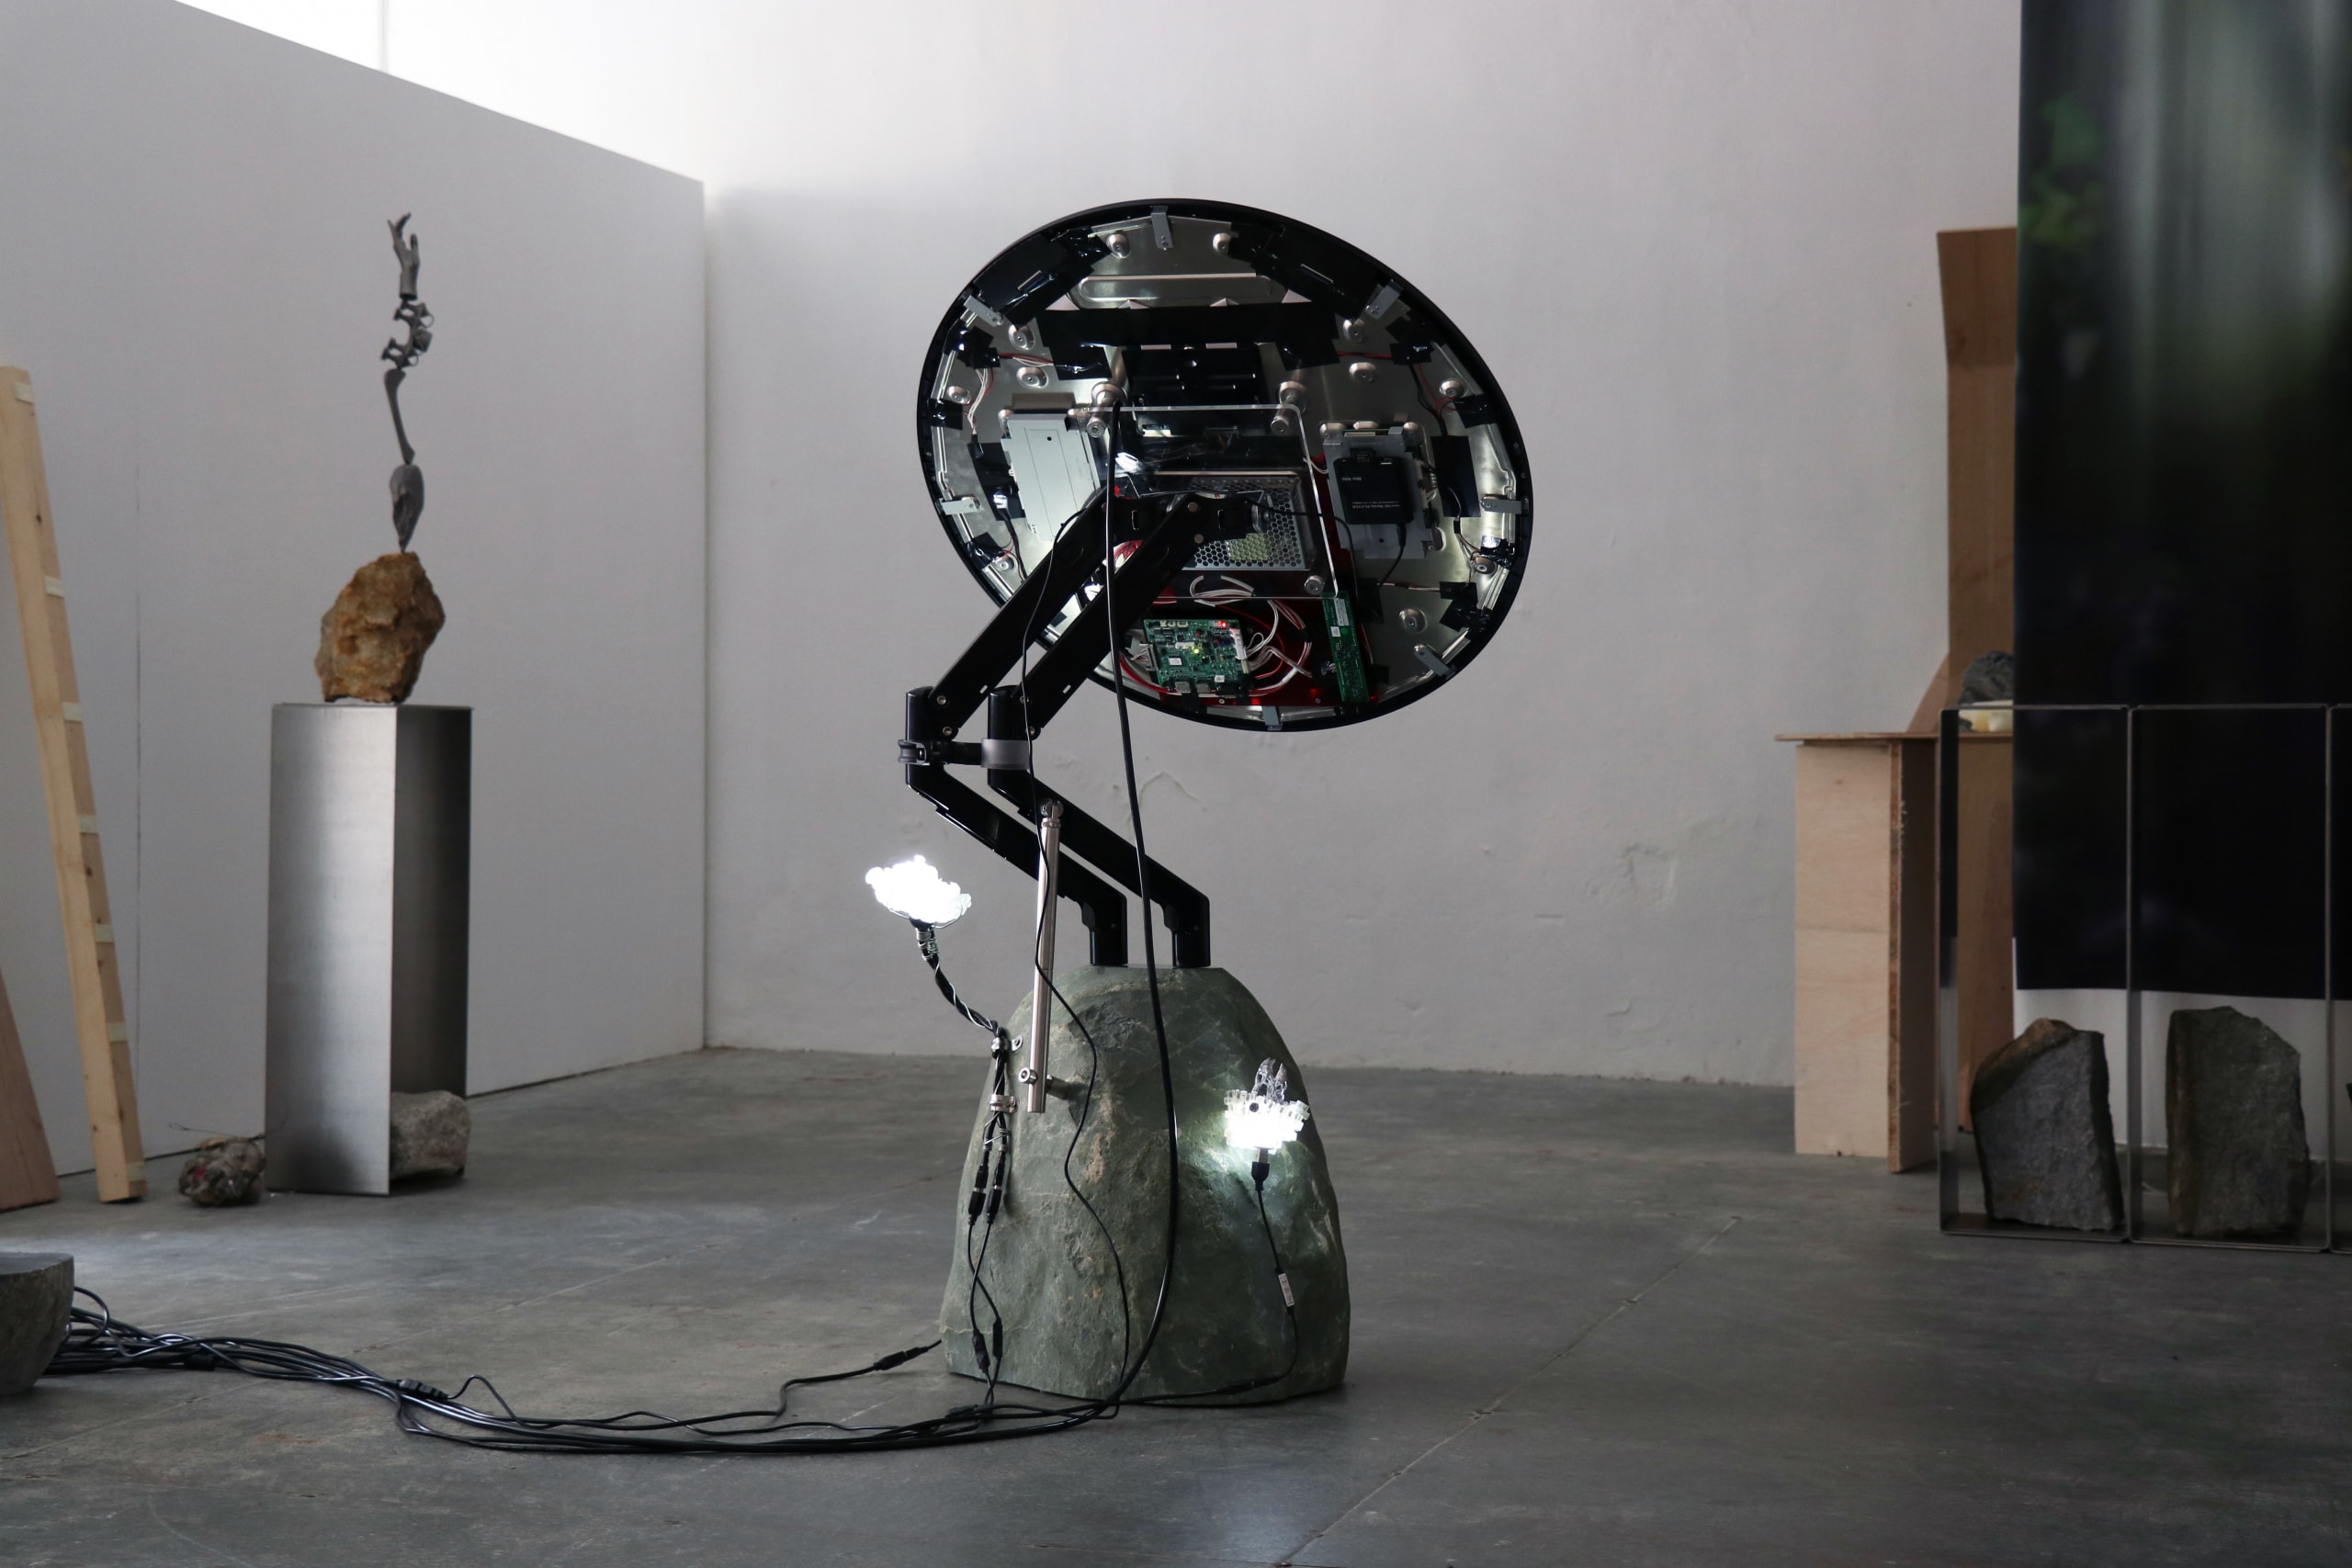 Batten and Kamp 與數碼藝術家 Henry Chu 全新藝術裝置「F10W3R」